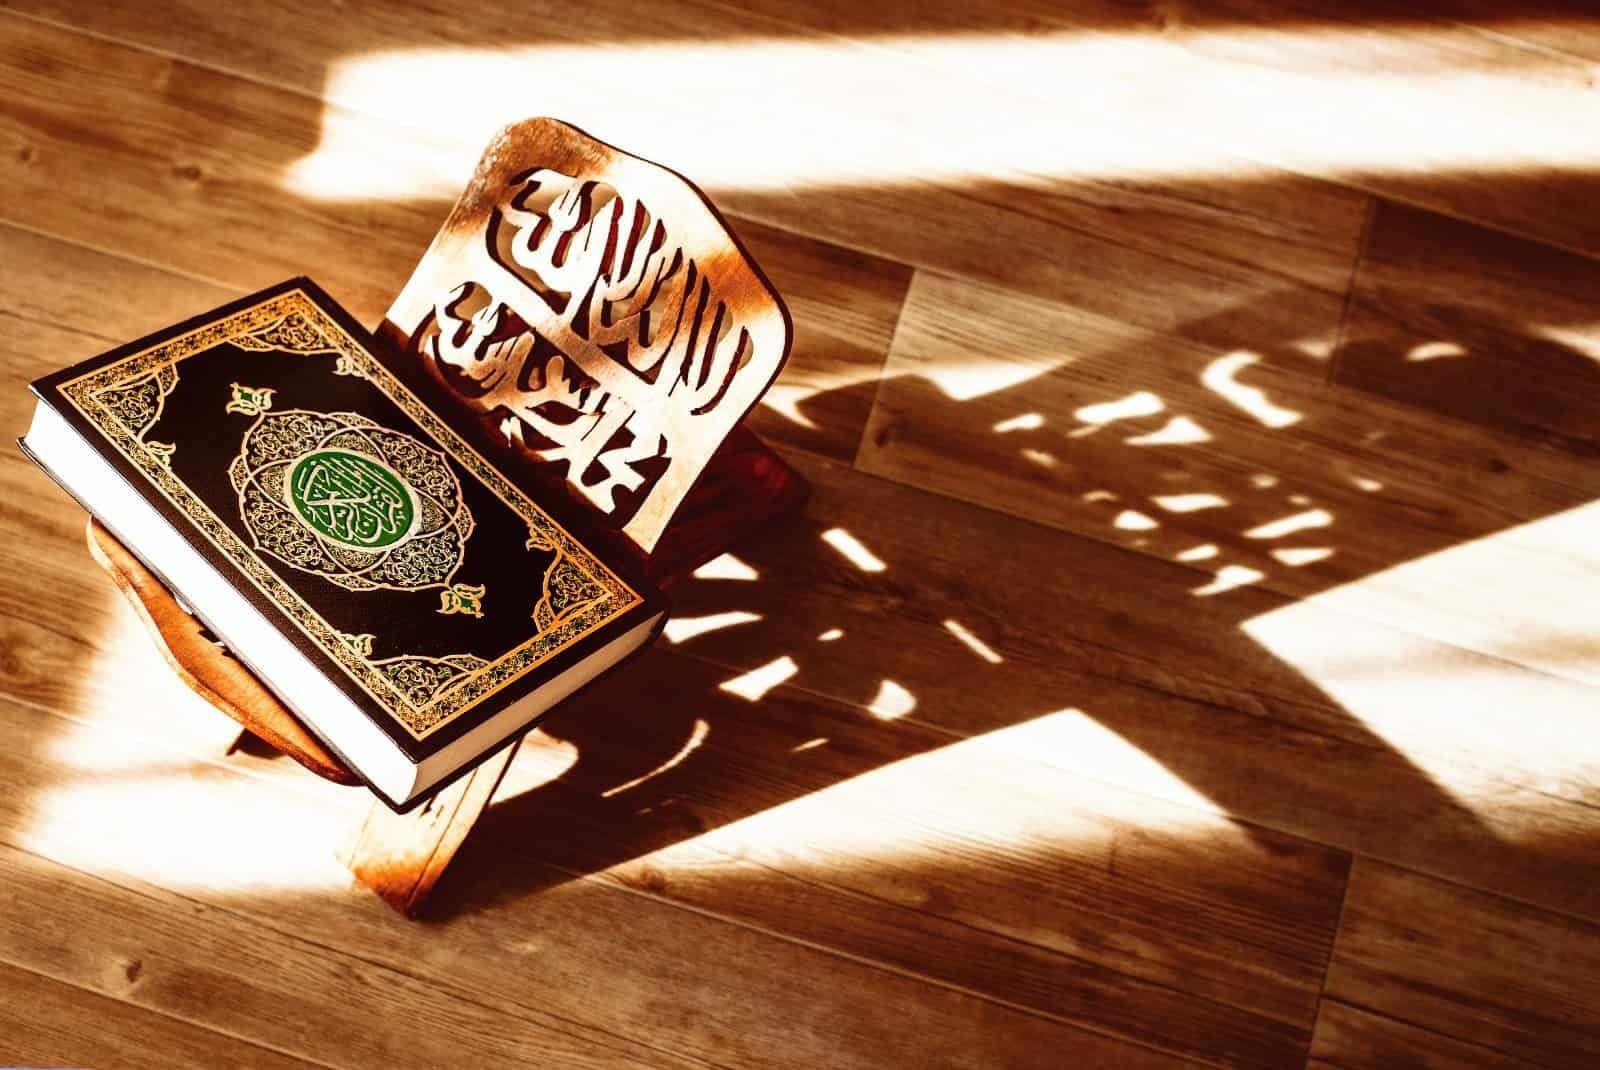 دراسة التراكيب القرآنية في تفاسير الصحابة الواردة في «جامع البيان» للإمام الطبري